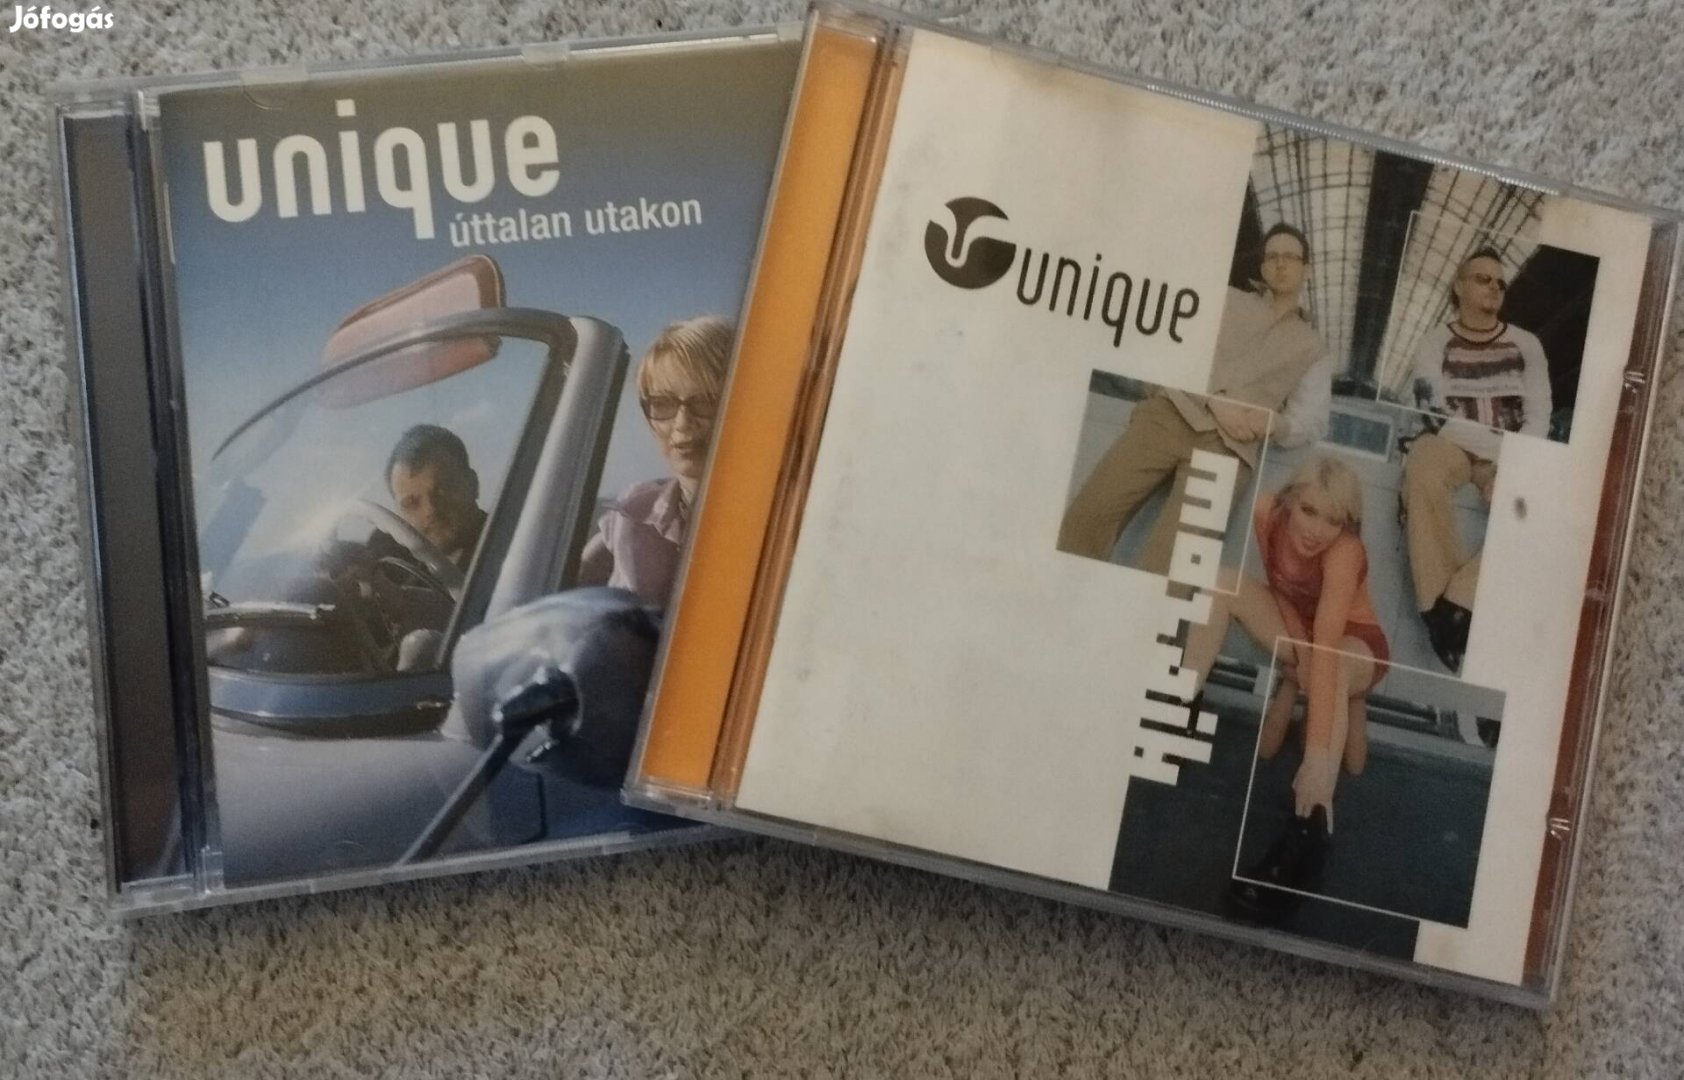 2 db Unique cd kizárólag egyben eladó